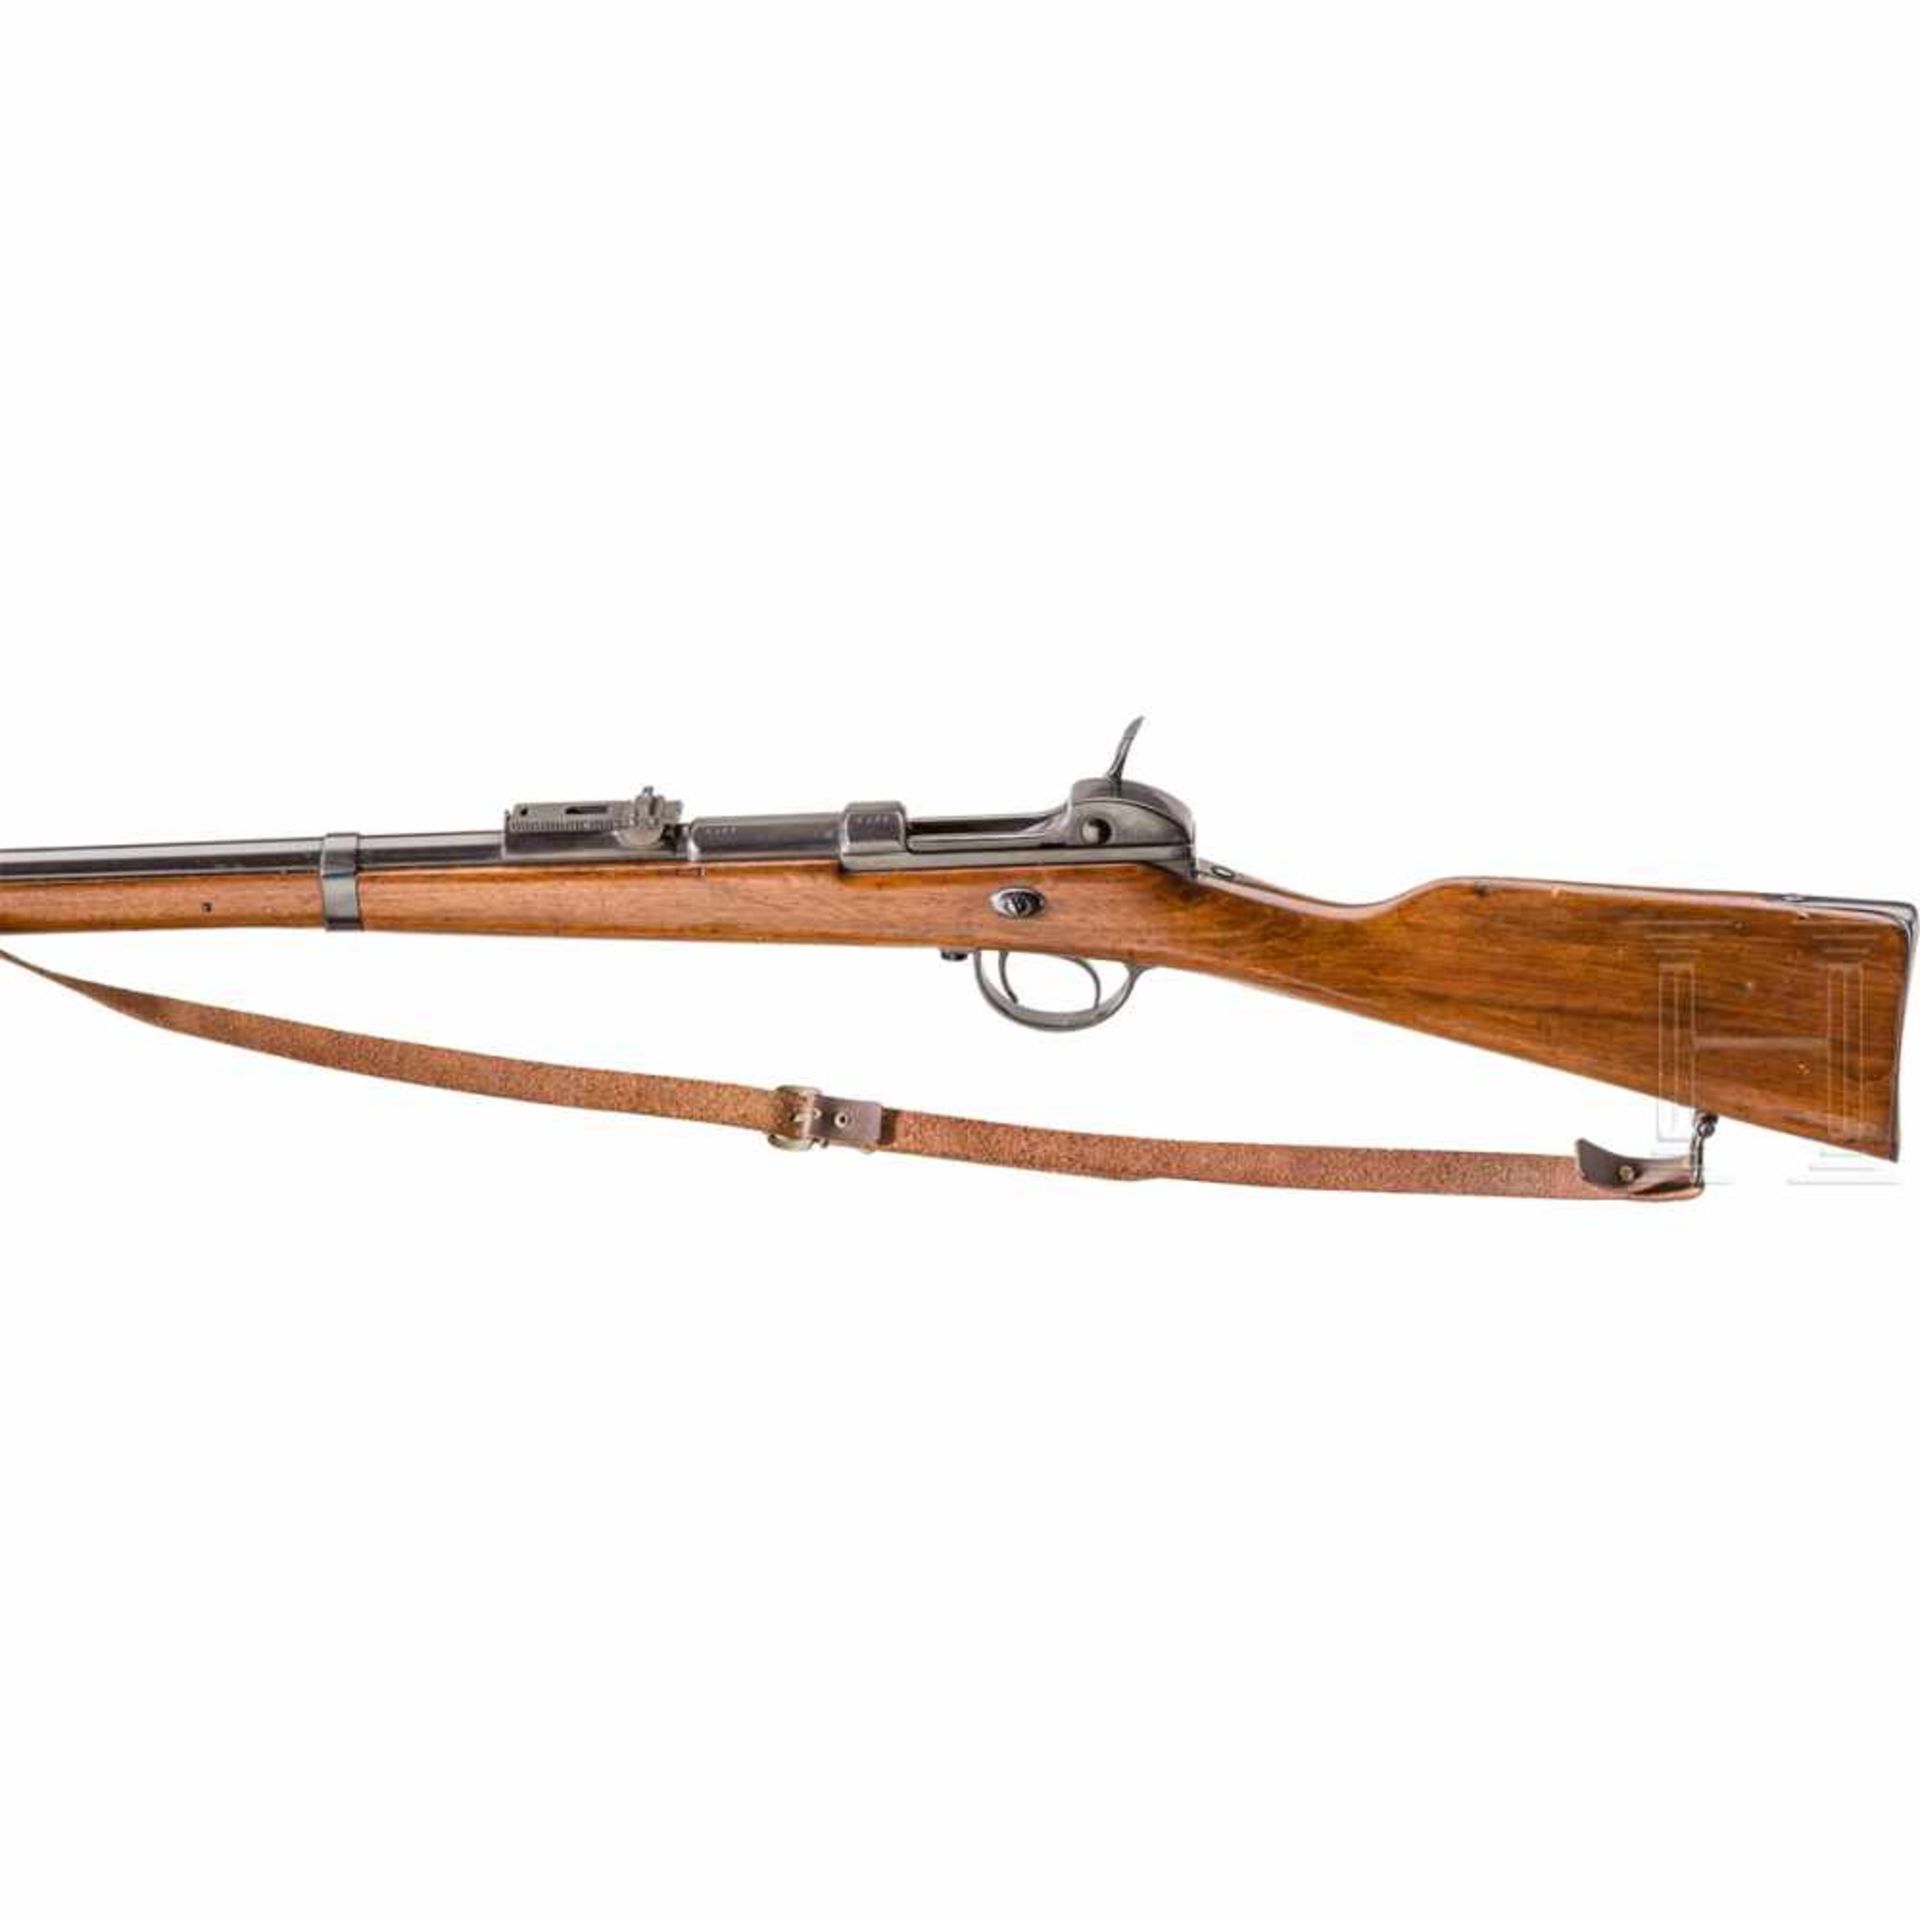 Gewehr Werder M 1869, OEWG, aptiertKal. 11 mm, Nr. 8100, Nummerngleich. Lauf matt. Rahmenvisier. - Bild 2 aus 2